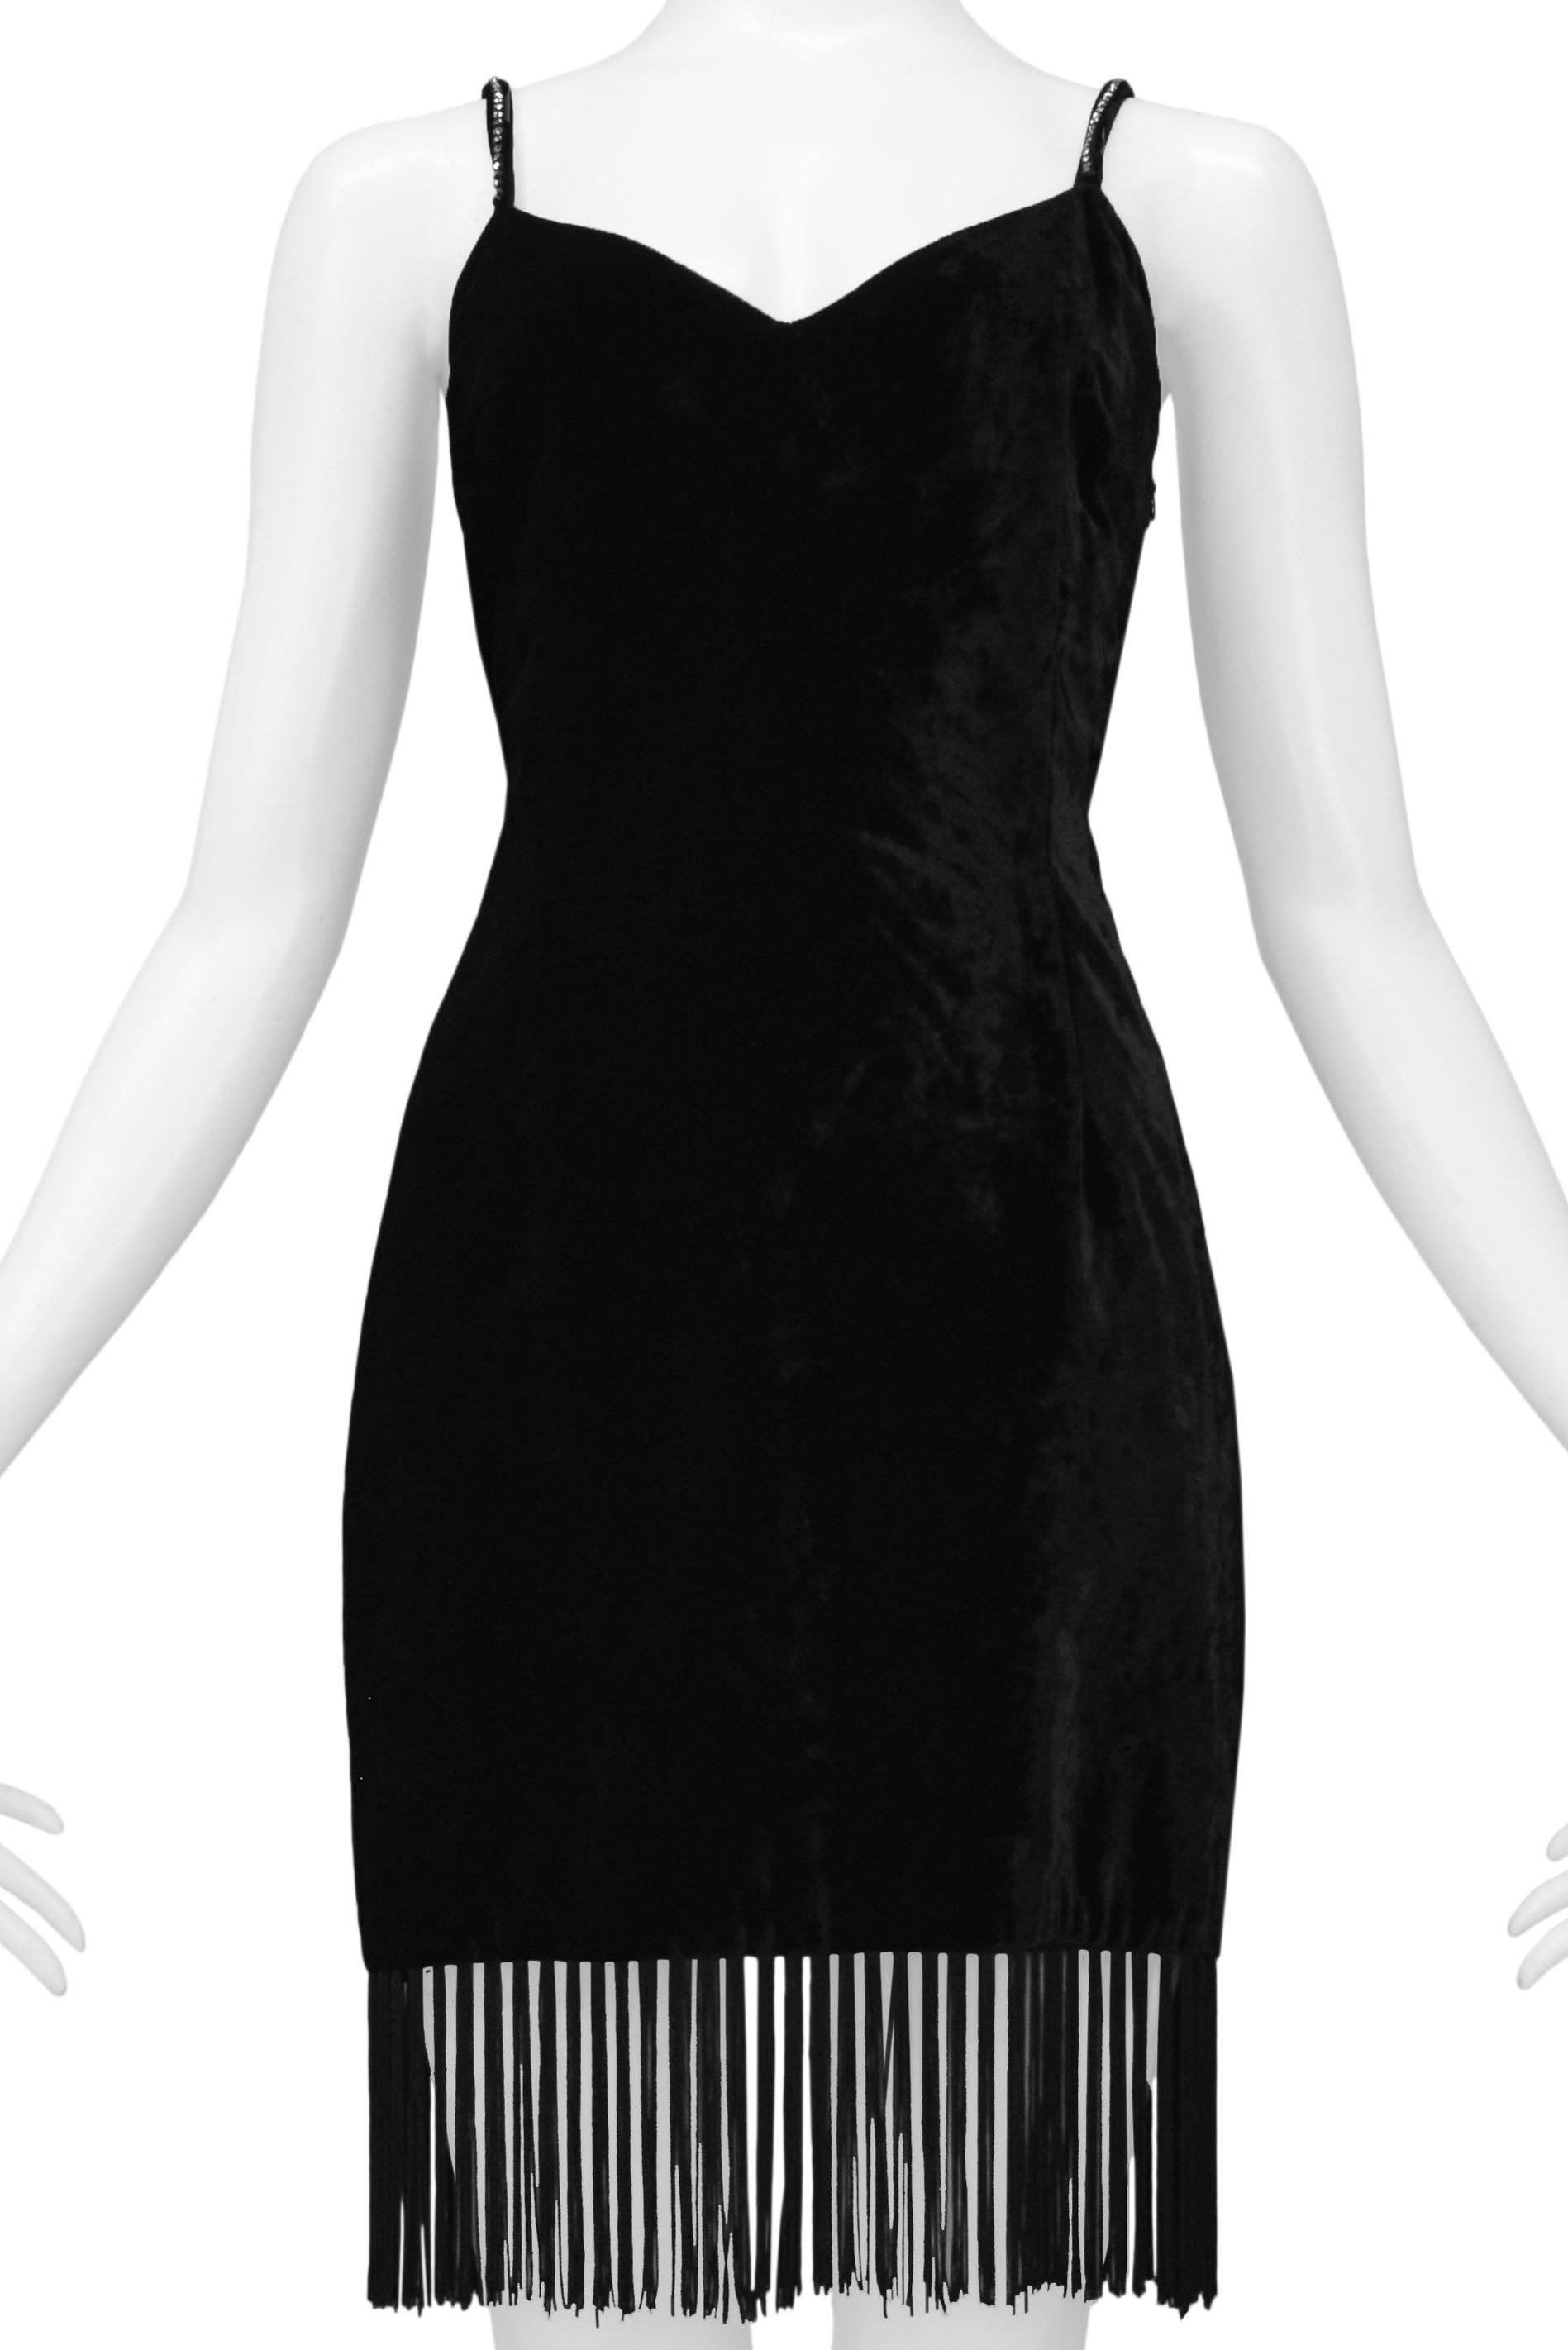 Women's Dolce & Gabbana Black Velvet Mini Dress With Fringe Hem & Rhinestone Straps For Sale